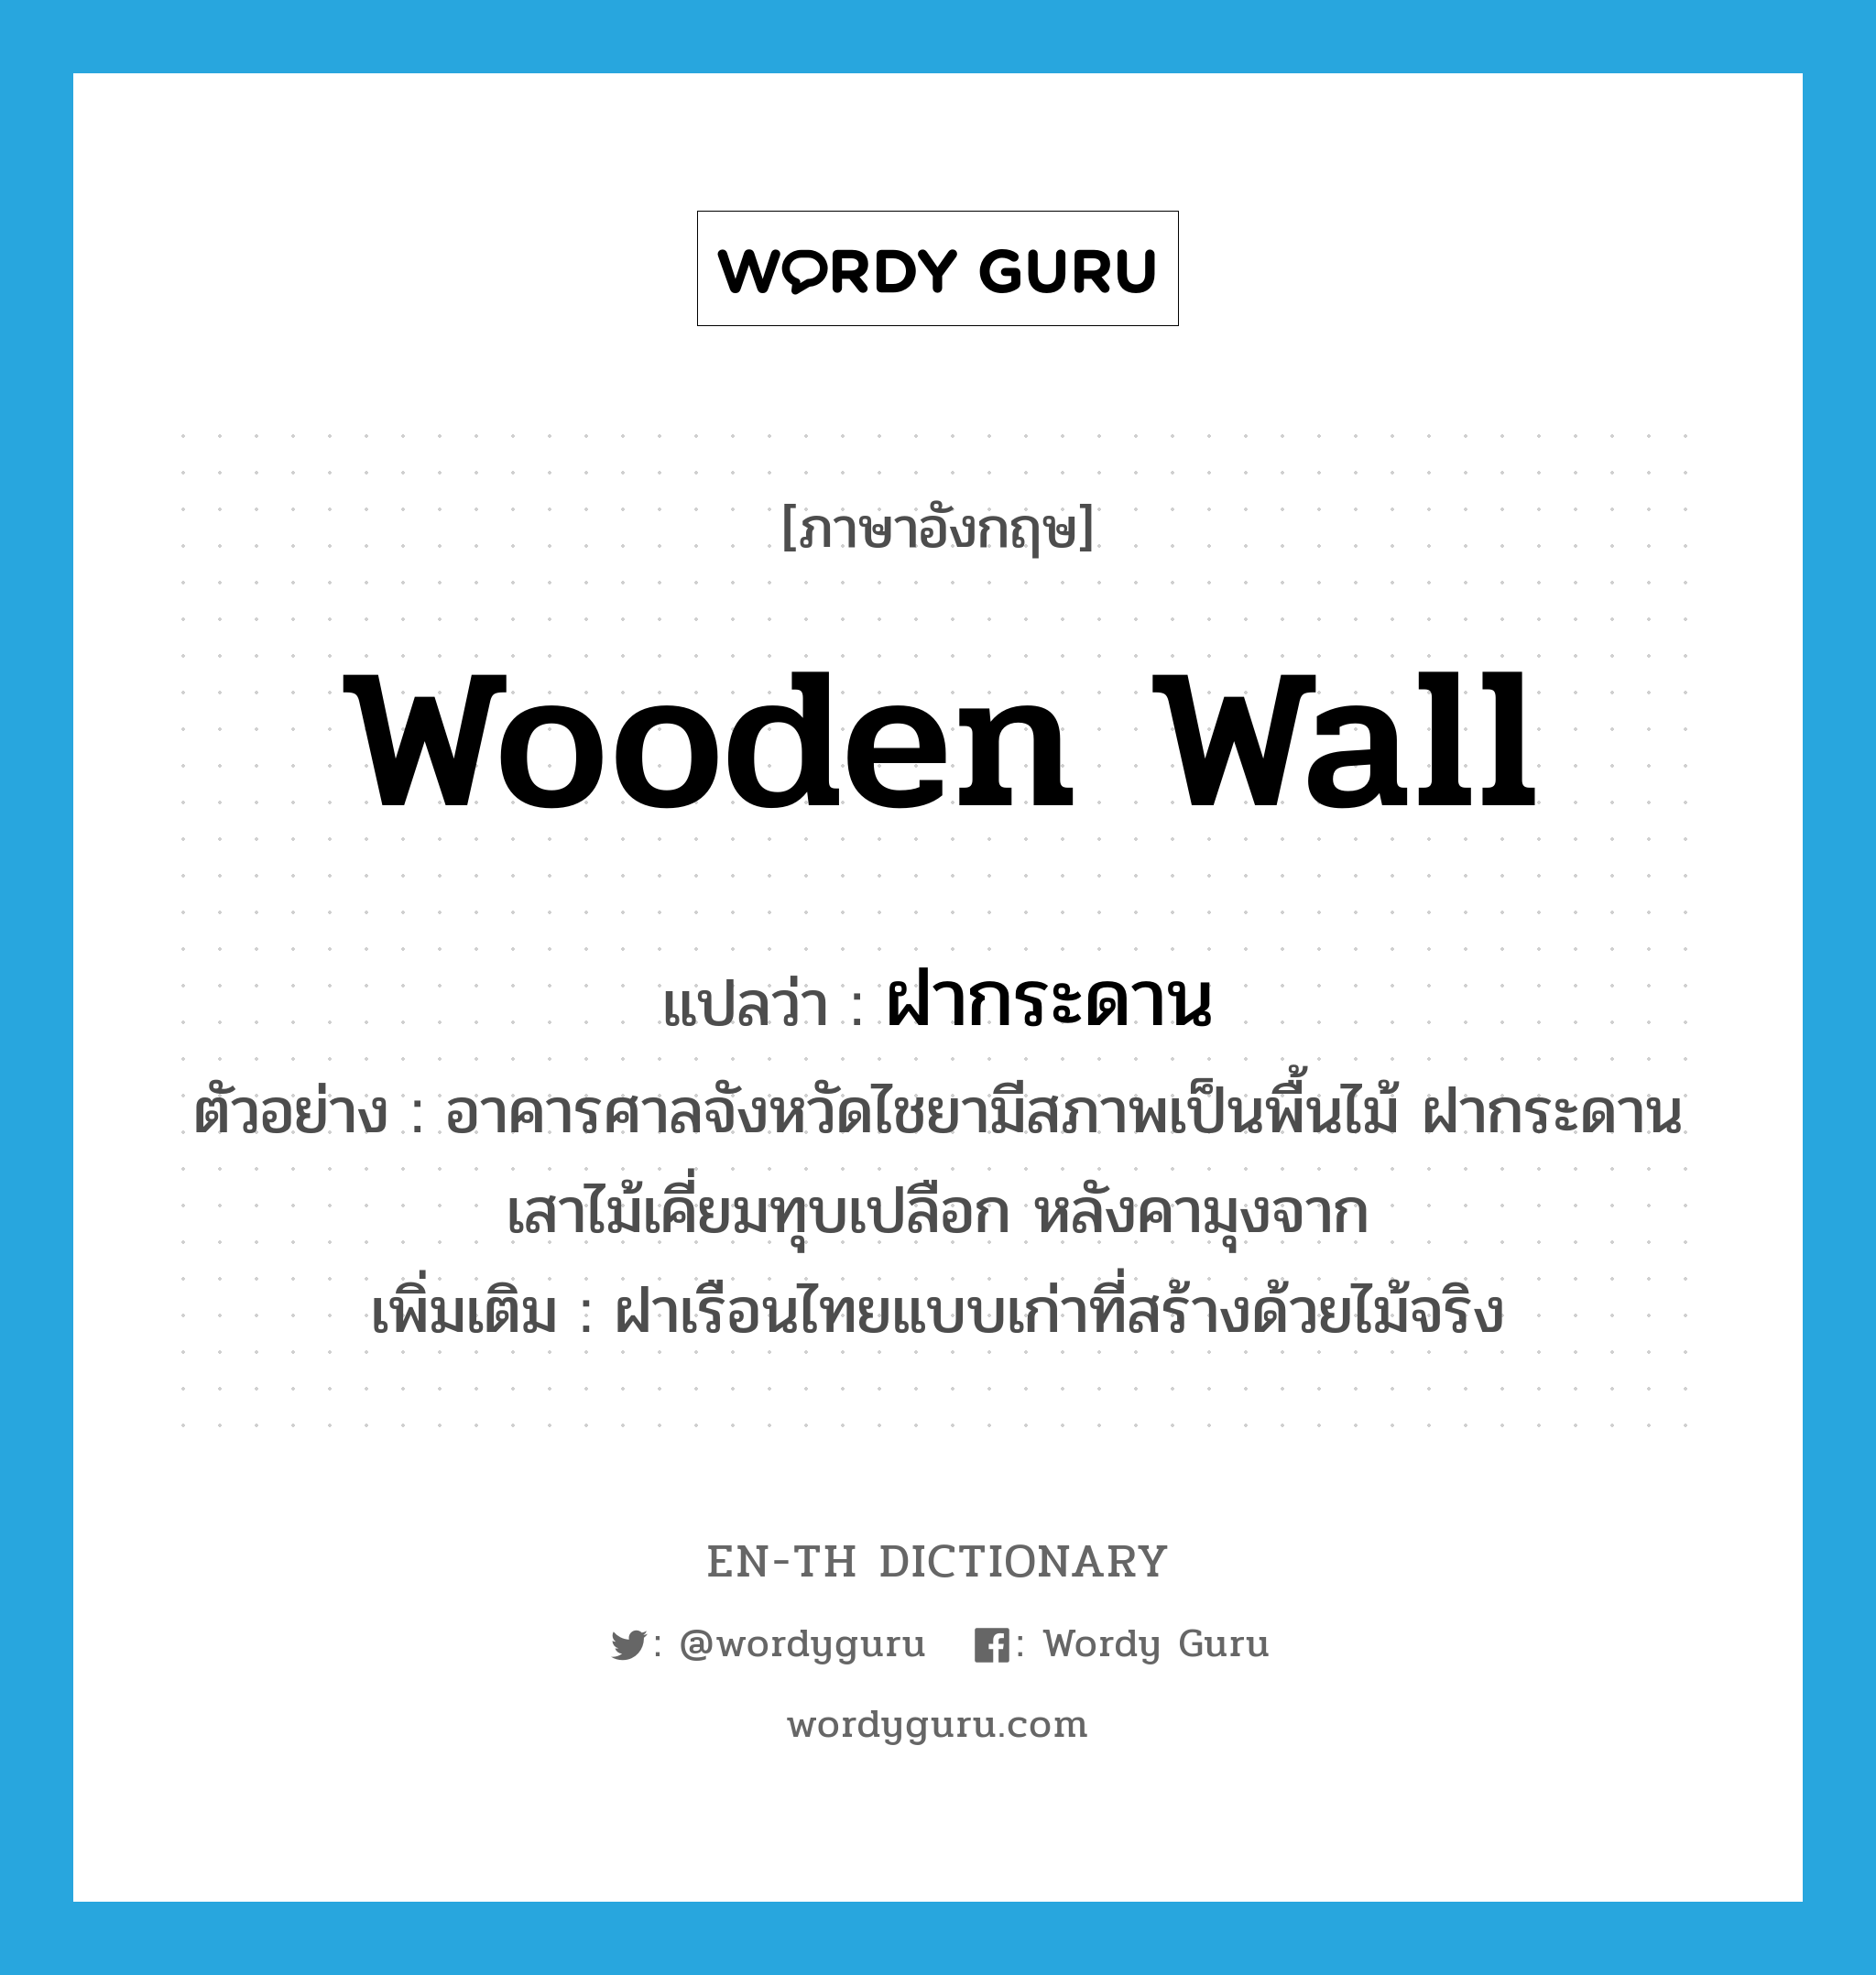 ฝากระดาน ภาษาอังกฤษ?, คำศัพท์ภาษาอังกฤษ ฝากระดาน แปลว่า wooden wall ประเภท N ตัวอย่าง อาคารศาลจังหวัดไชยามีสภาพเป็นพื้นไม้ ฝากระดาน เสาไม้เคี่ยมทุบเปลือก หลังคามุงจาก เพิ่มเติม ฝาเรือนไทยแบบเก่าที่สร้างด้วยไม้จริง หมวด N